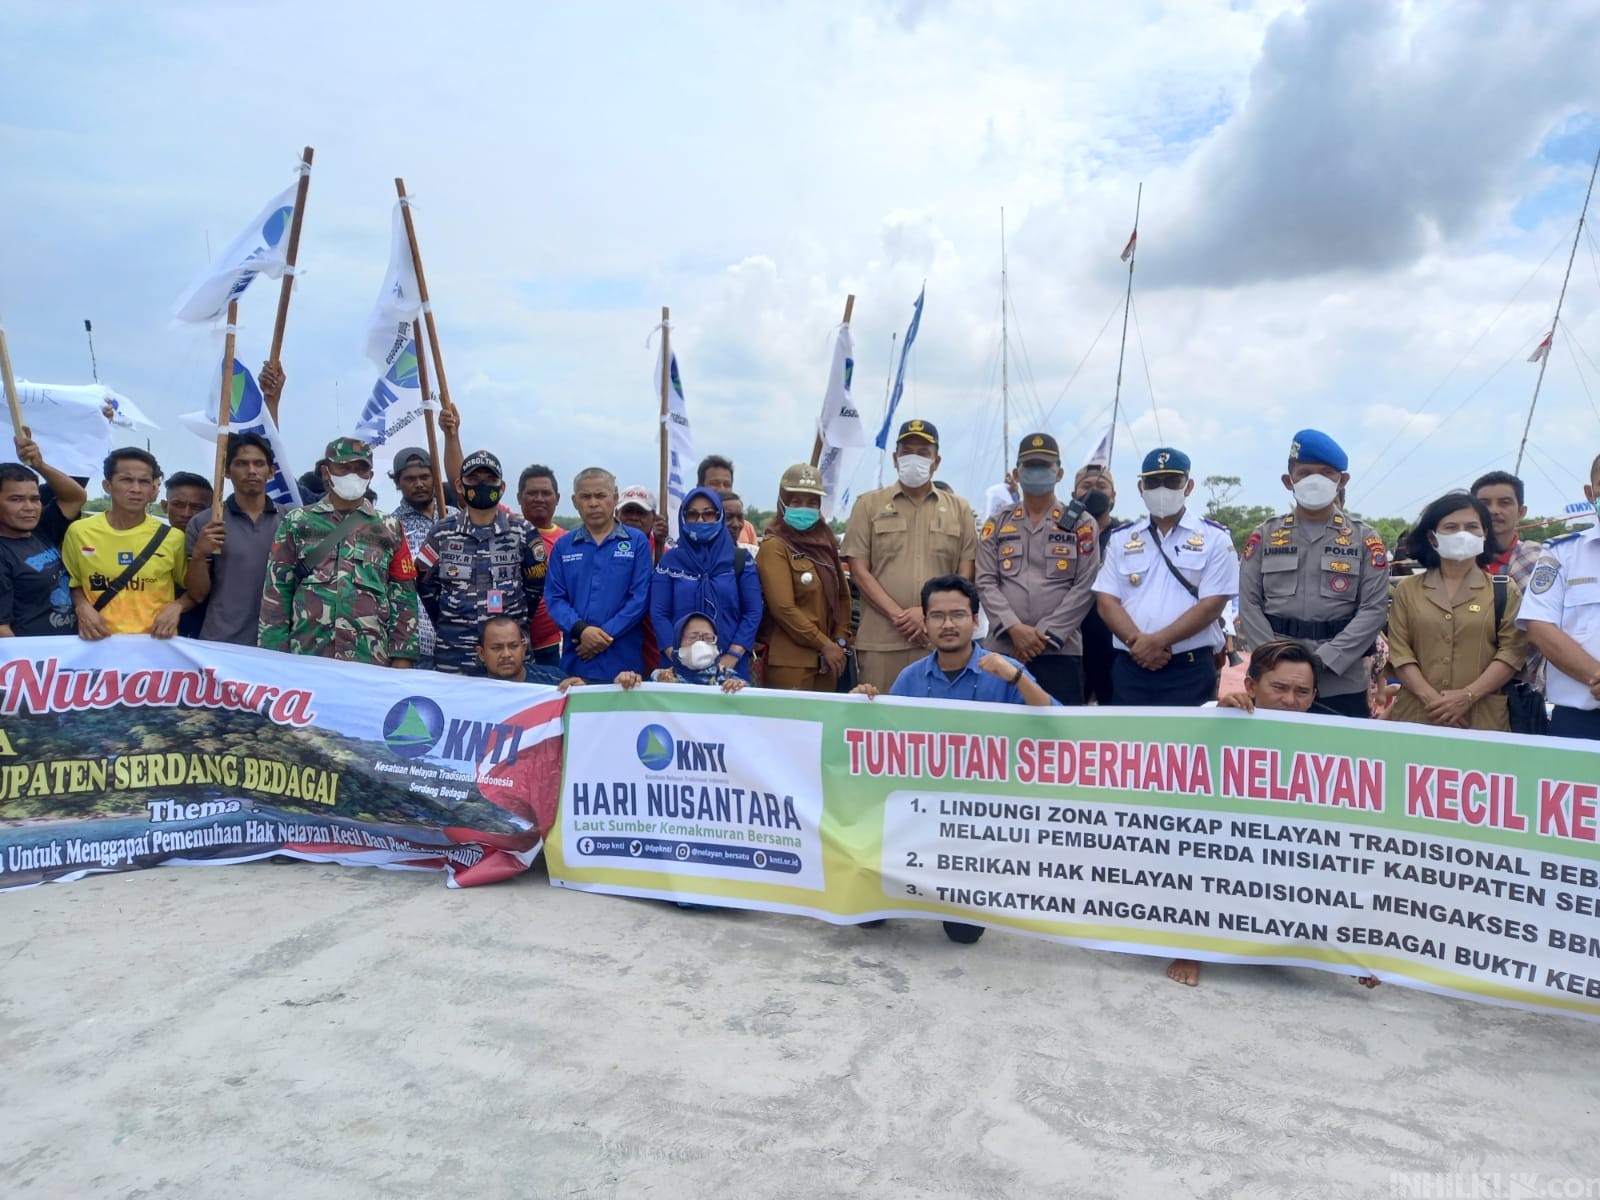 DPD KNTI Sergai Peringati Hari Nusantara, Ini Tuntutan Kepada Pemerintah Daerah